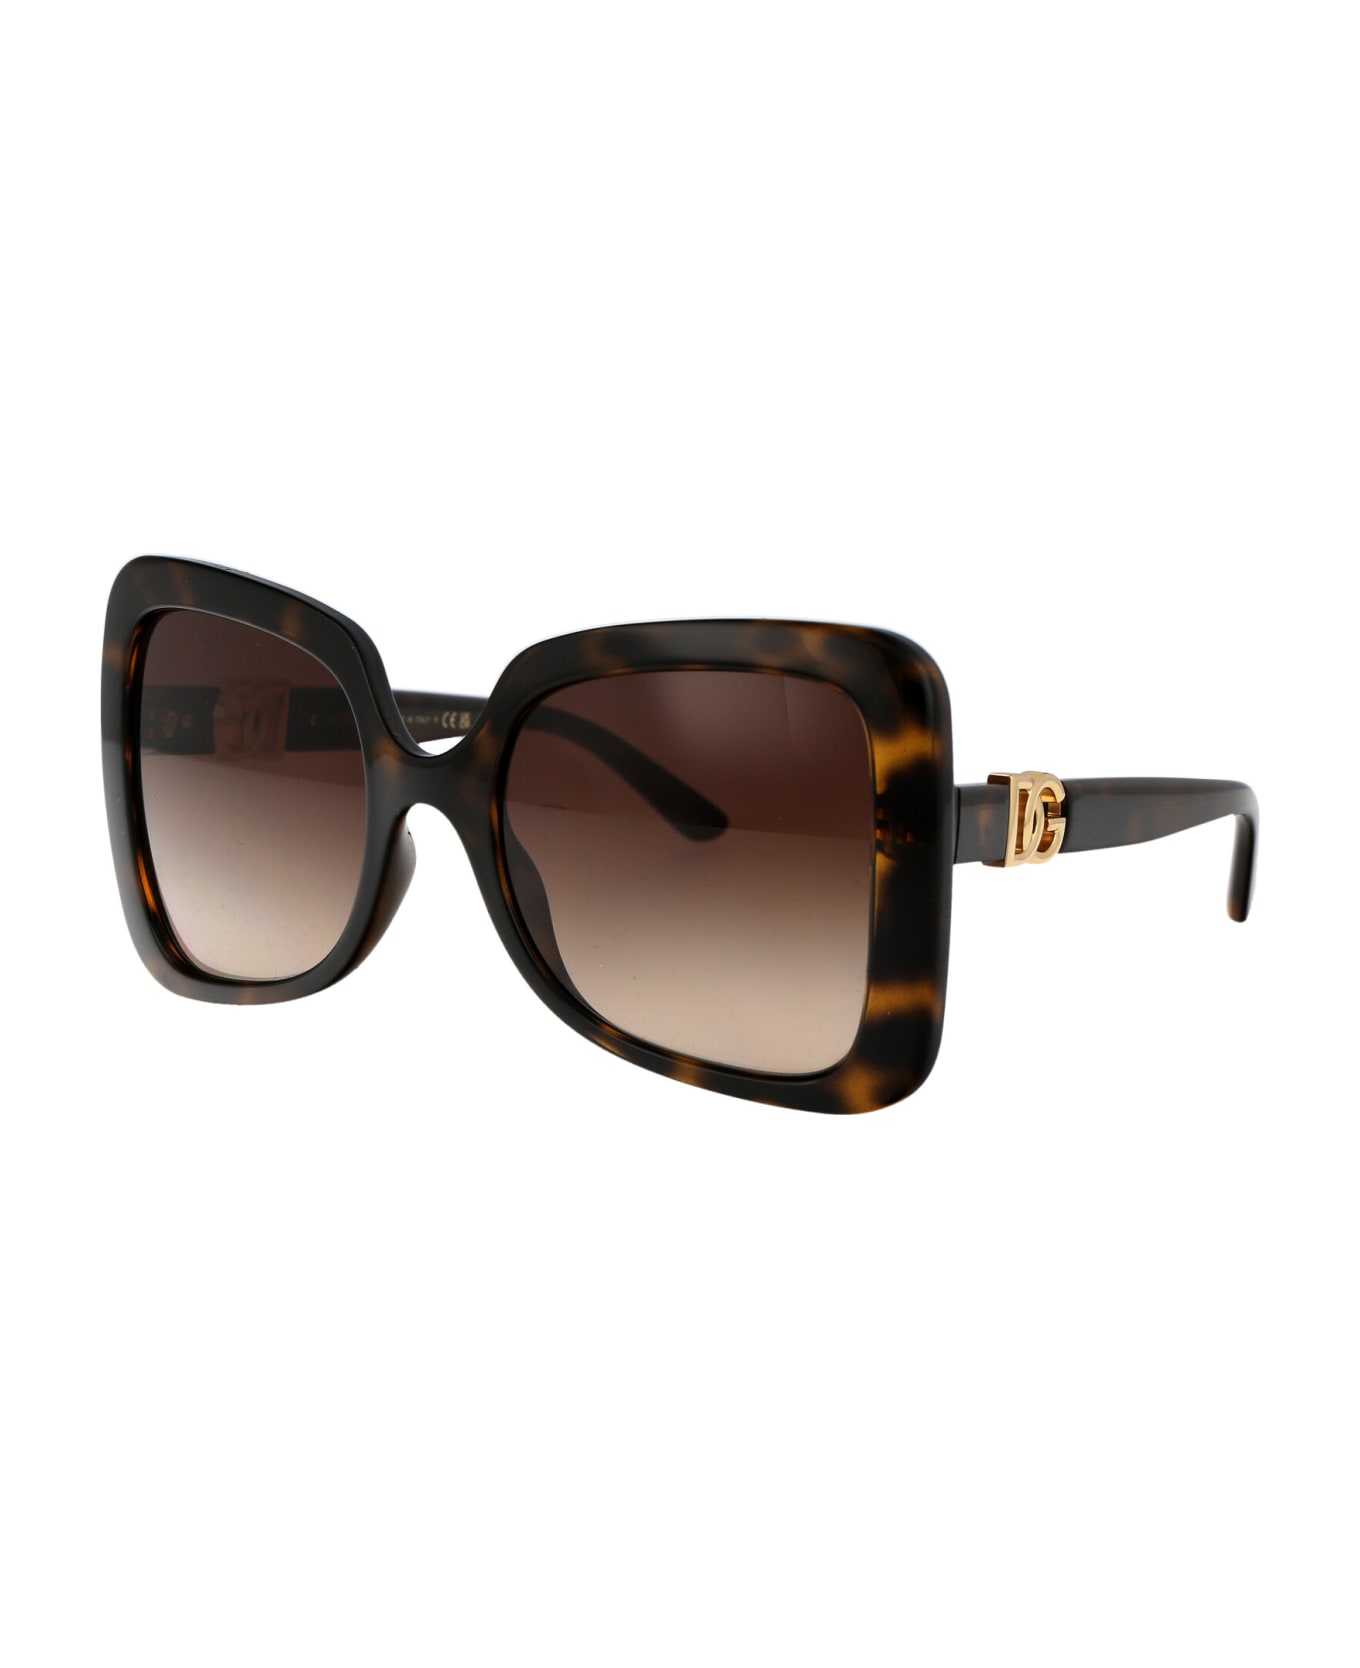 Dolce & Gabbana Eyewear 0dg6193u Sunglasses - 502/13 HAVANA